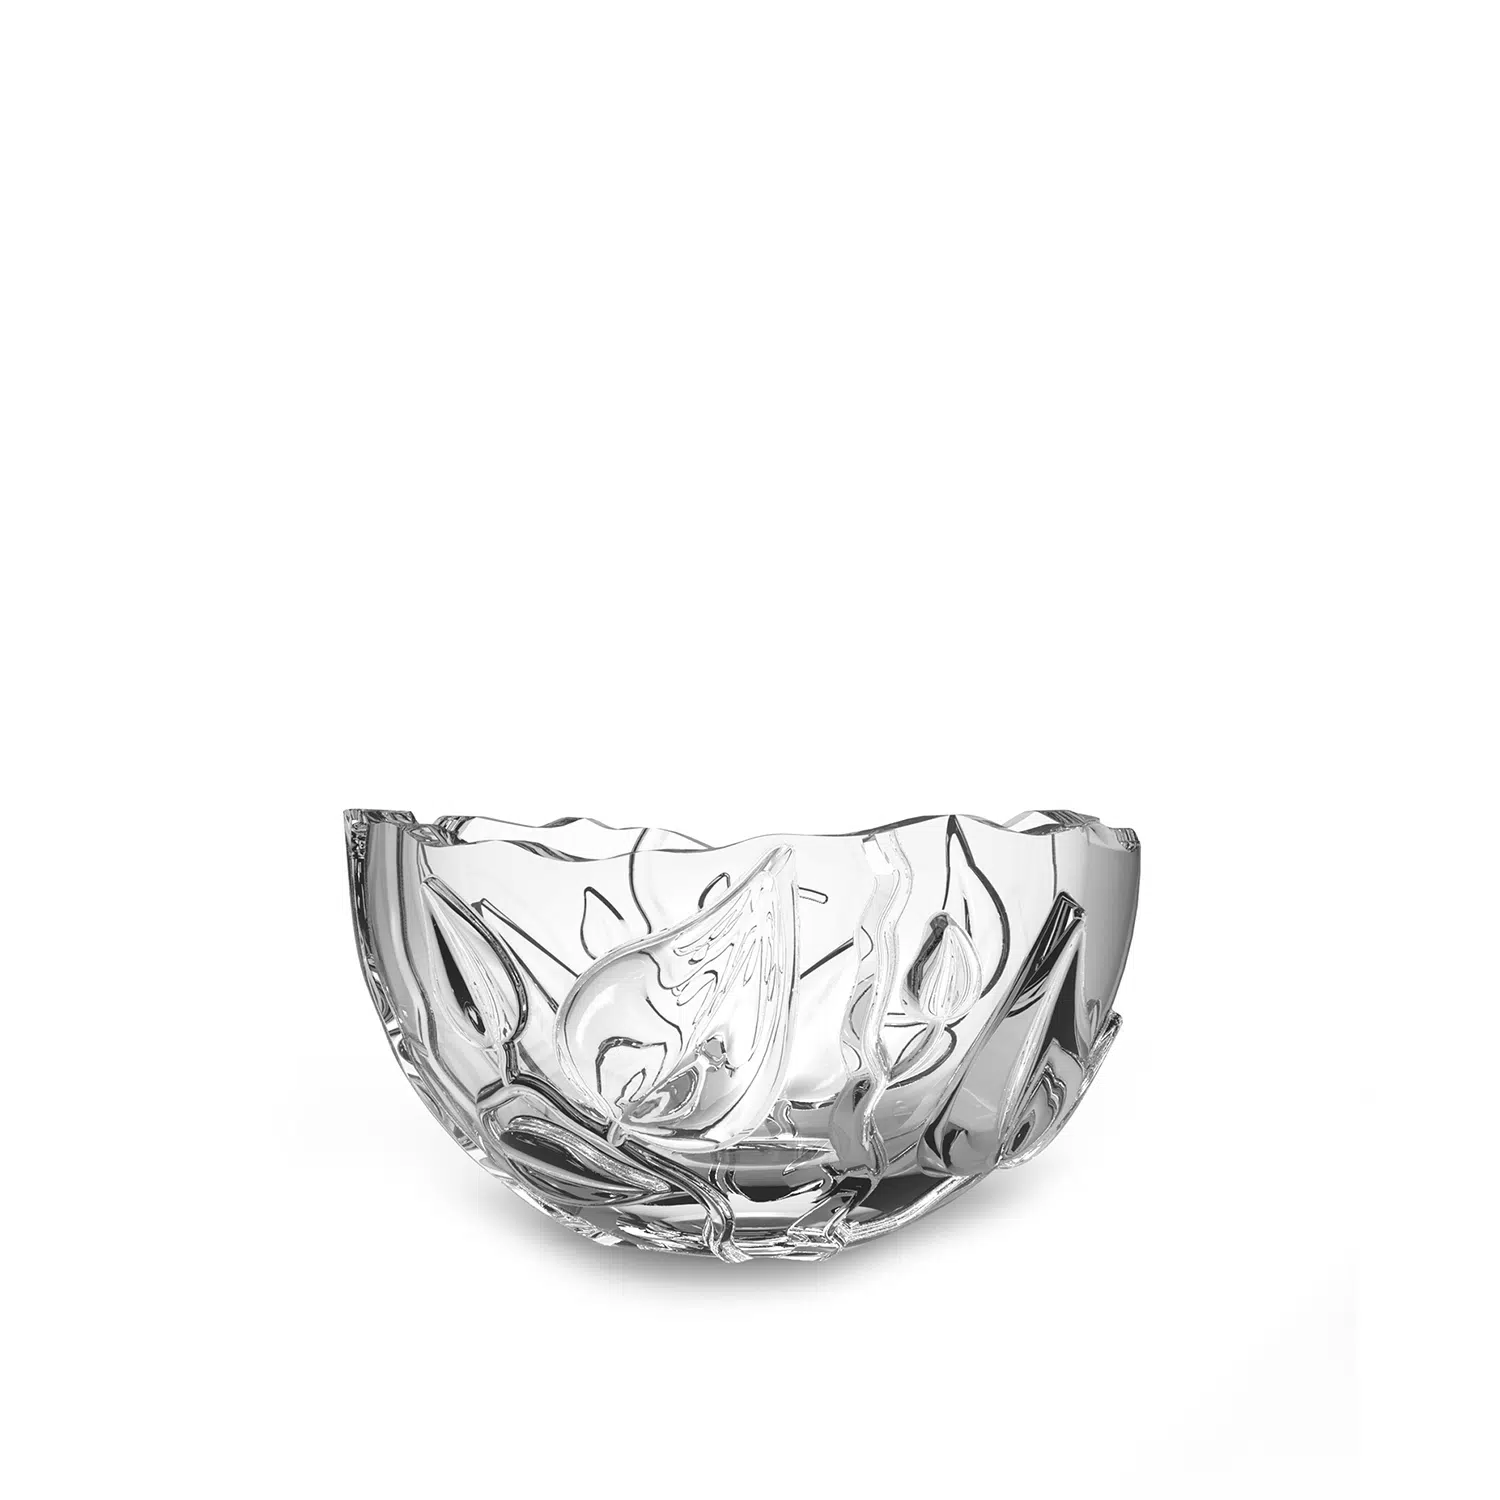 Designer crystal serving bowl